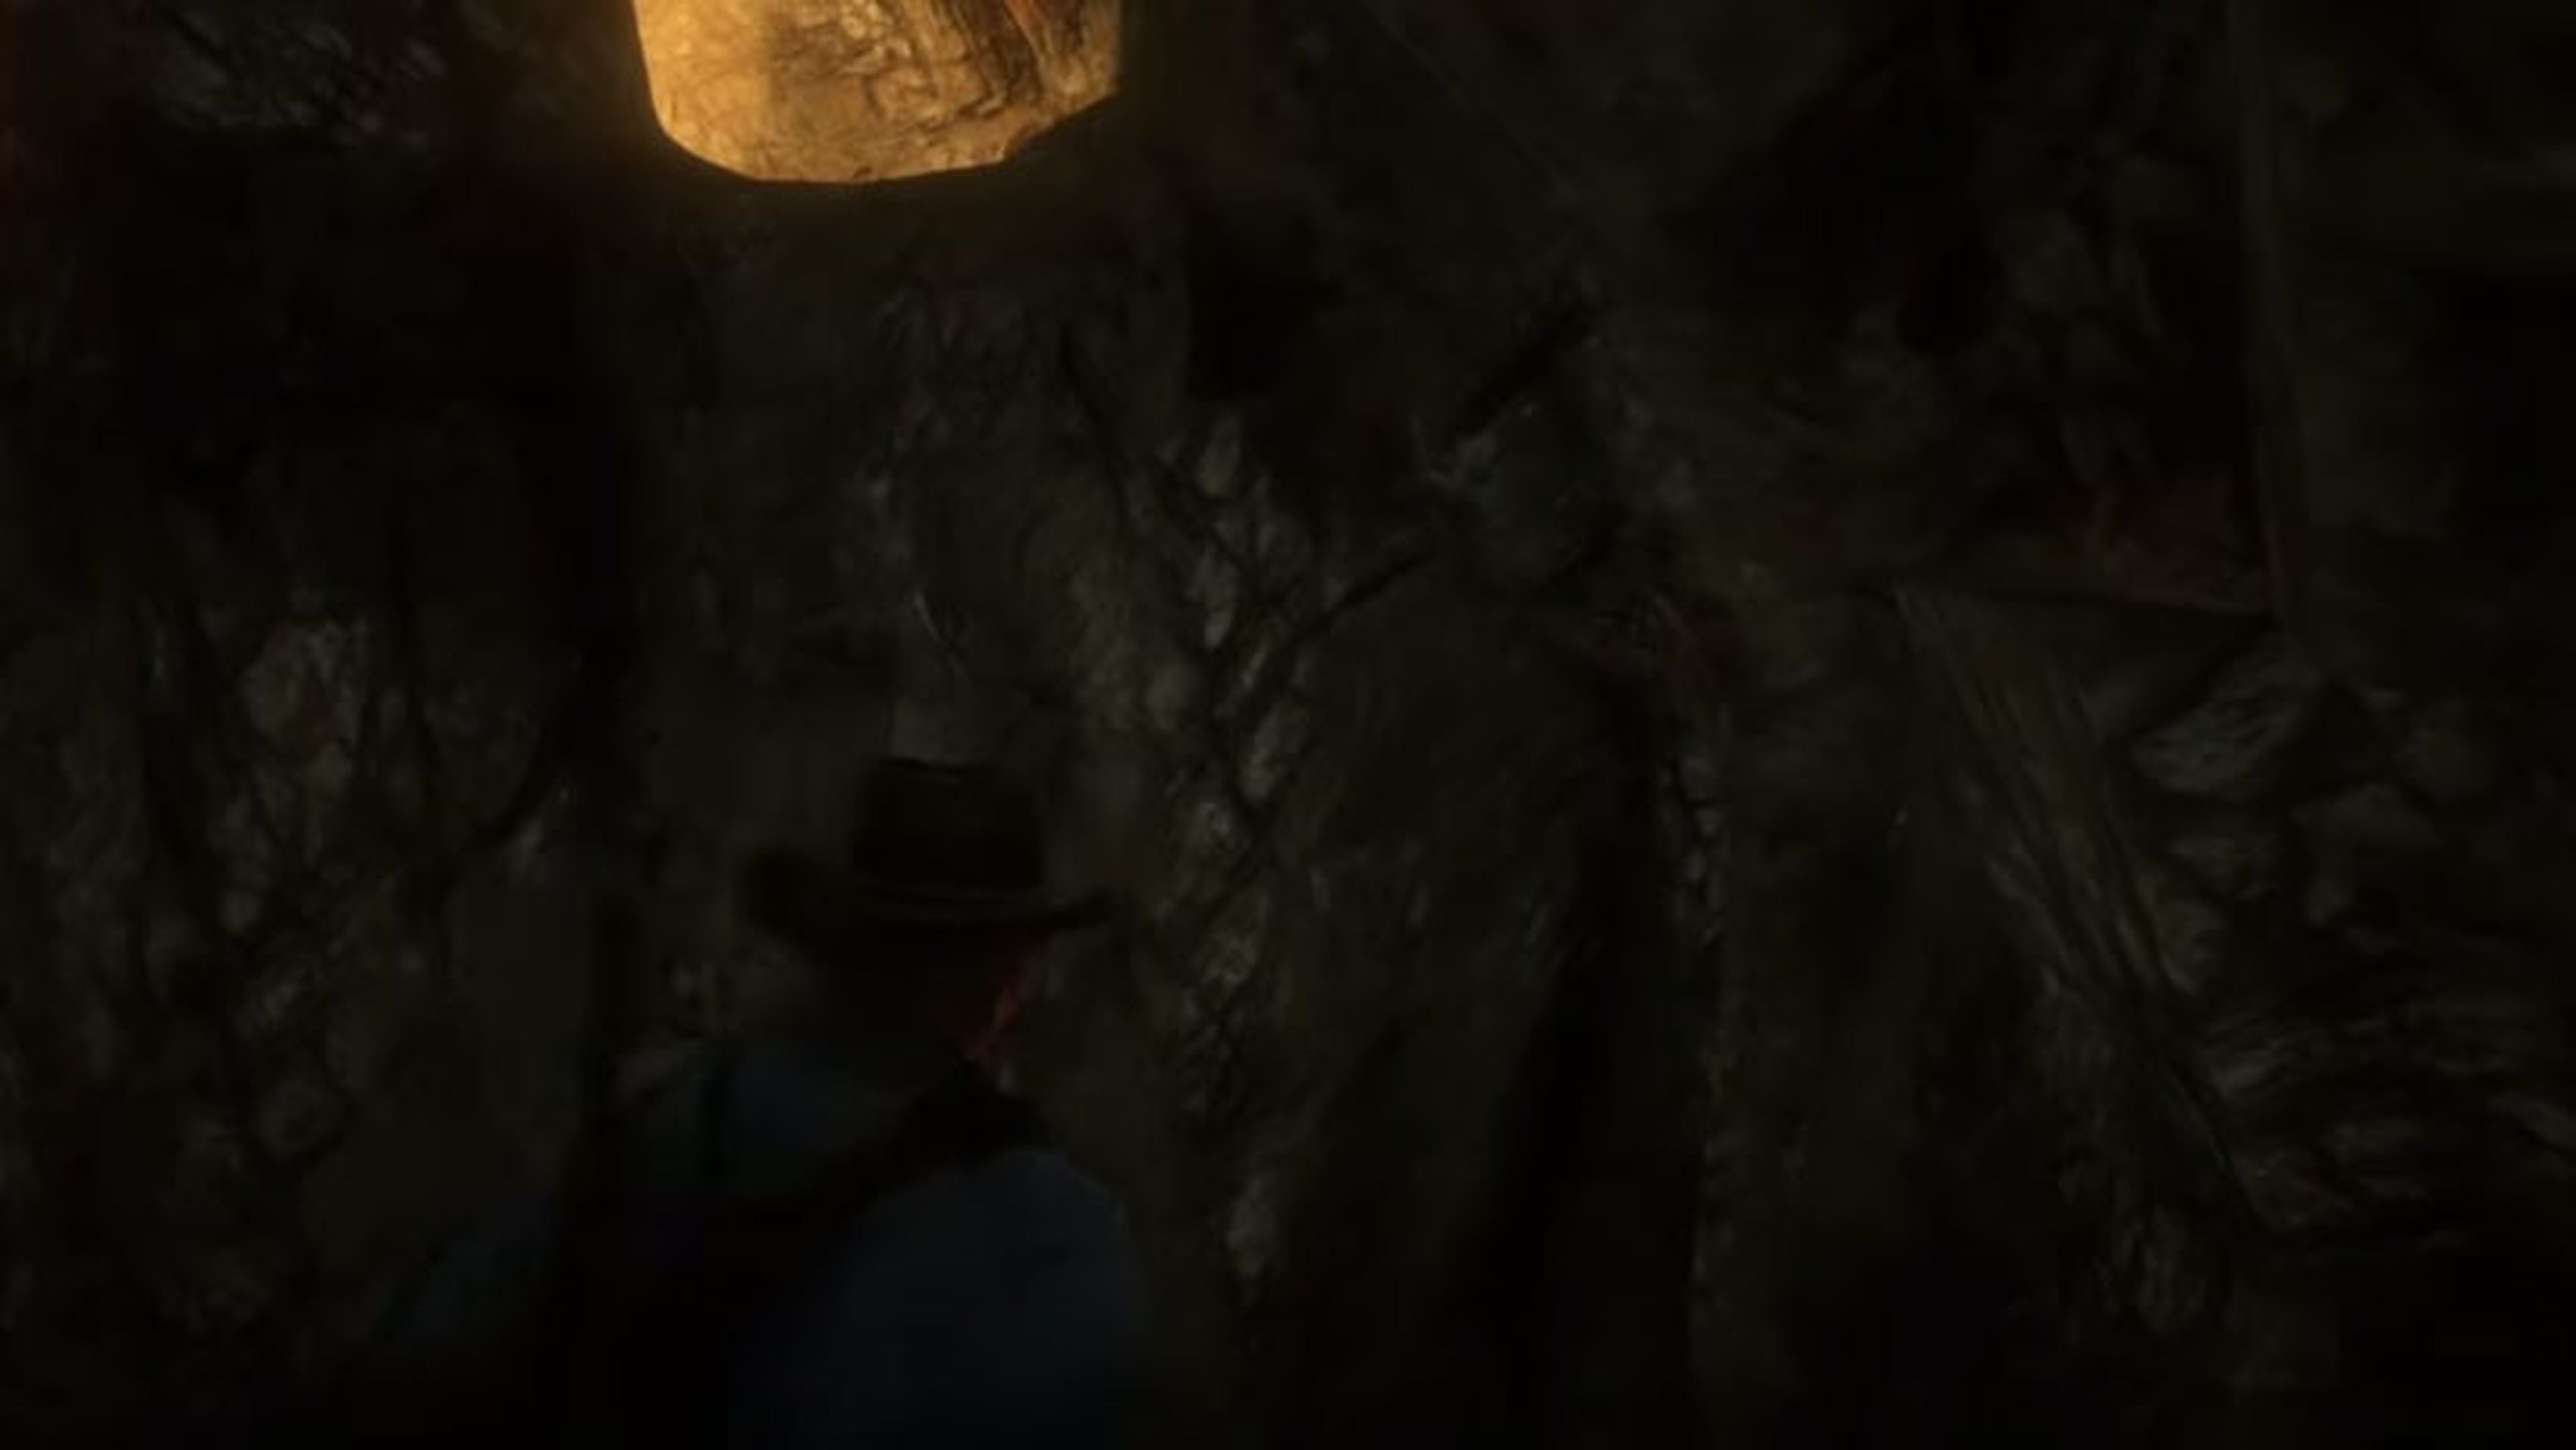 Cueva ermitaño Red Dead Redemption 2